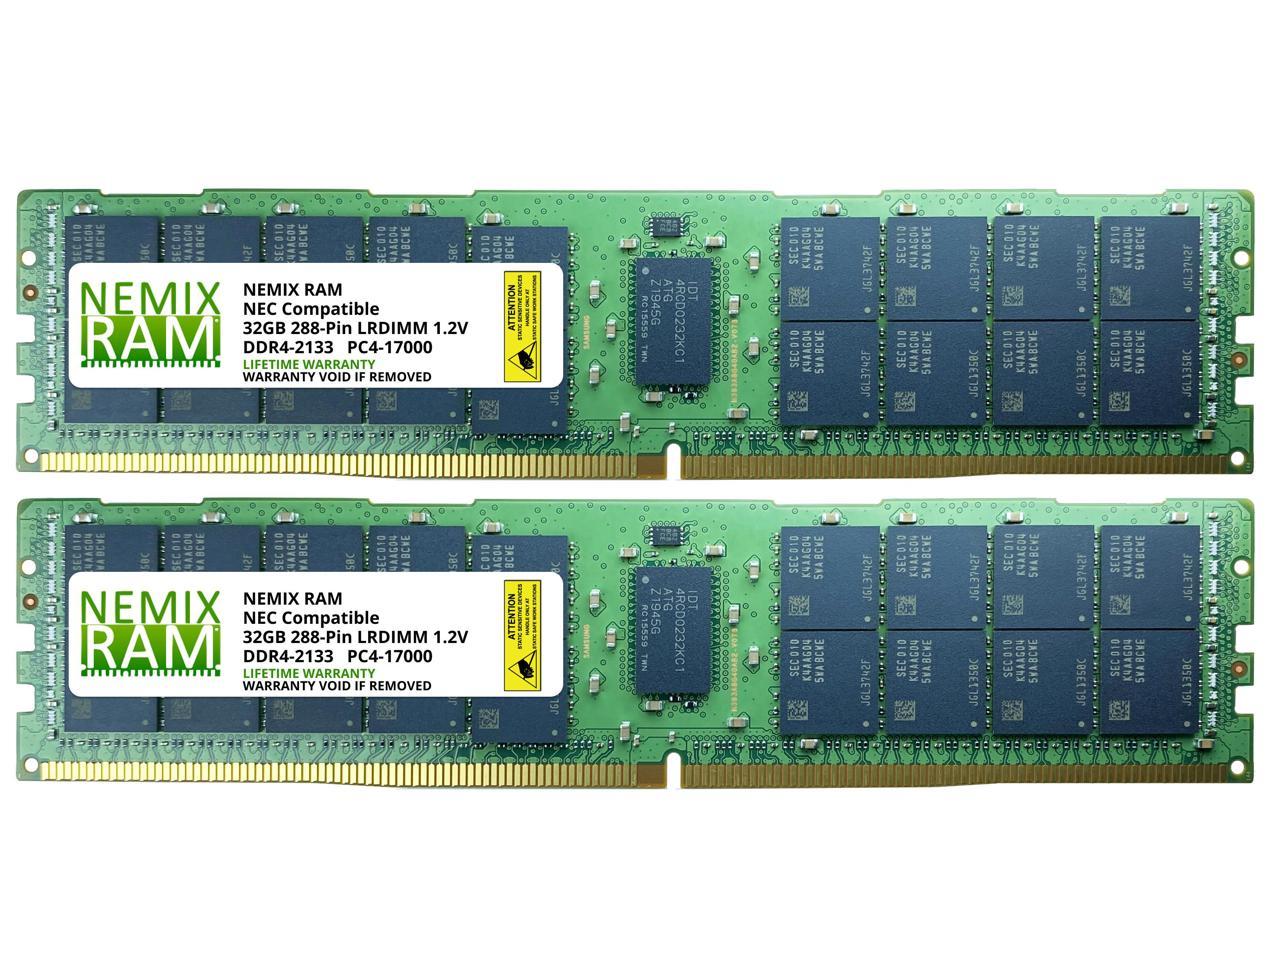 NEMIX RAM N8102-614F for NEC Express5800/R120f-2M 64GB (2x32GB) LRDIMM  Memory